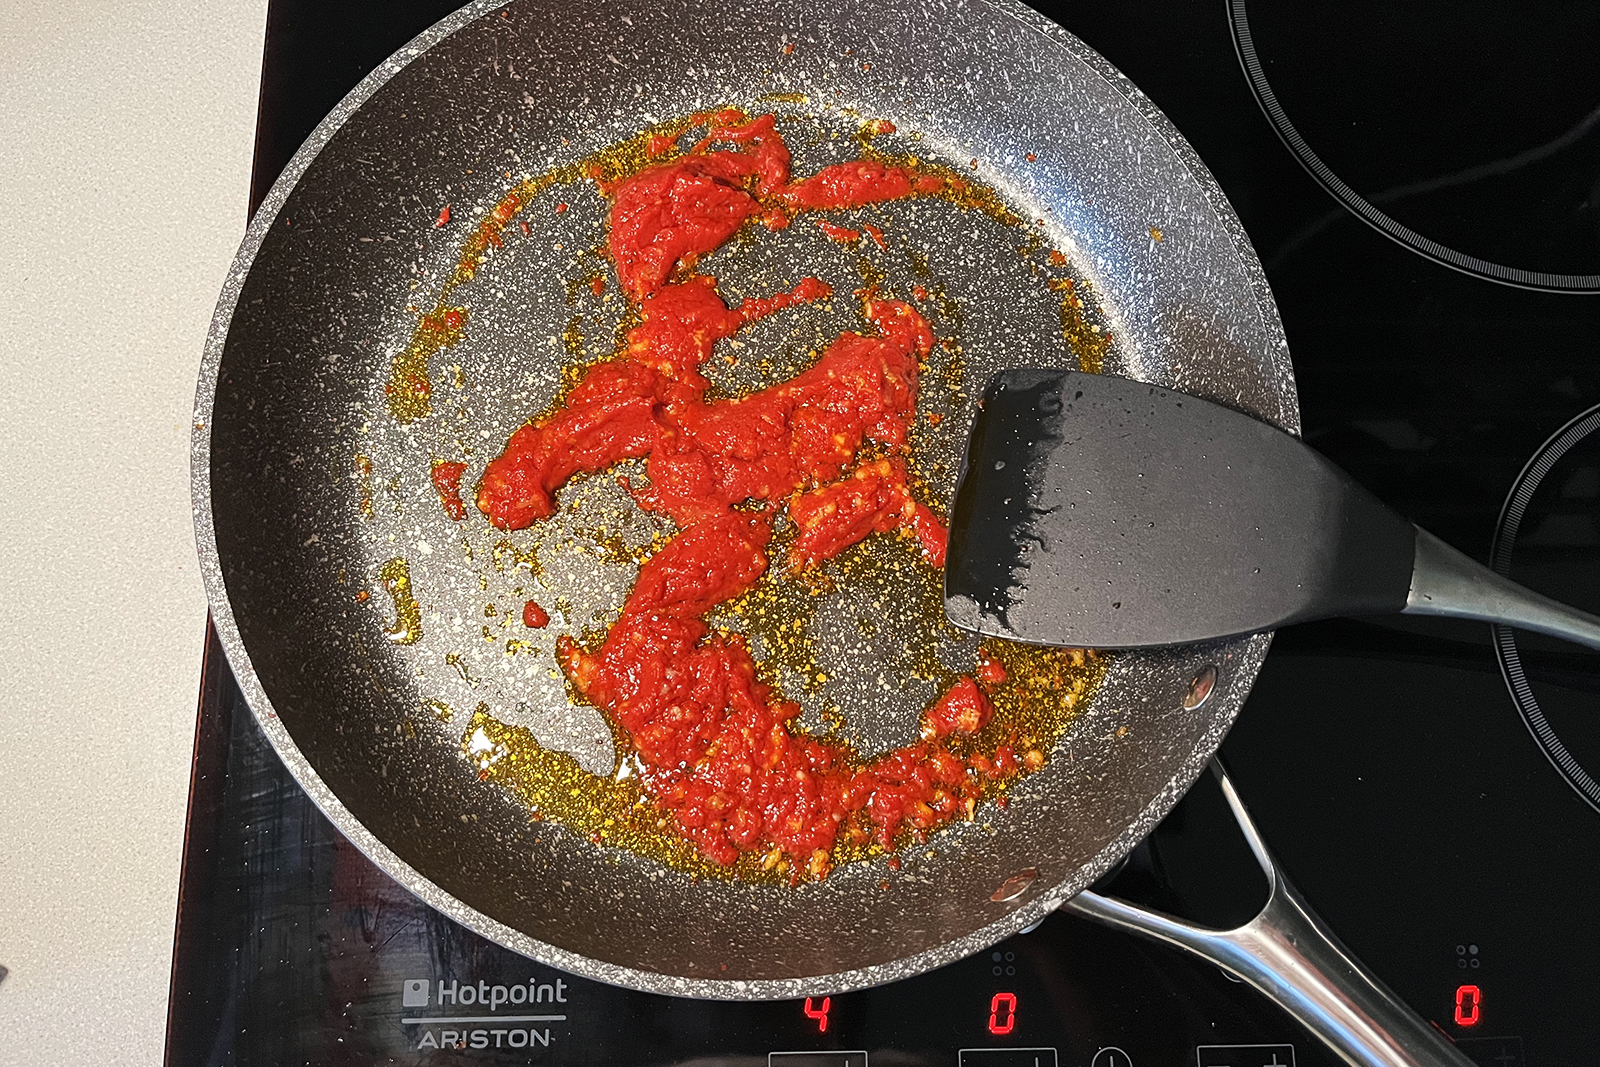 Я всегда обжариваю томатную пасту: так вкус блюда становится более ярким и насыщенным